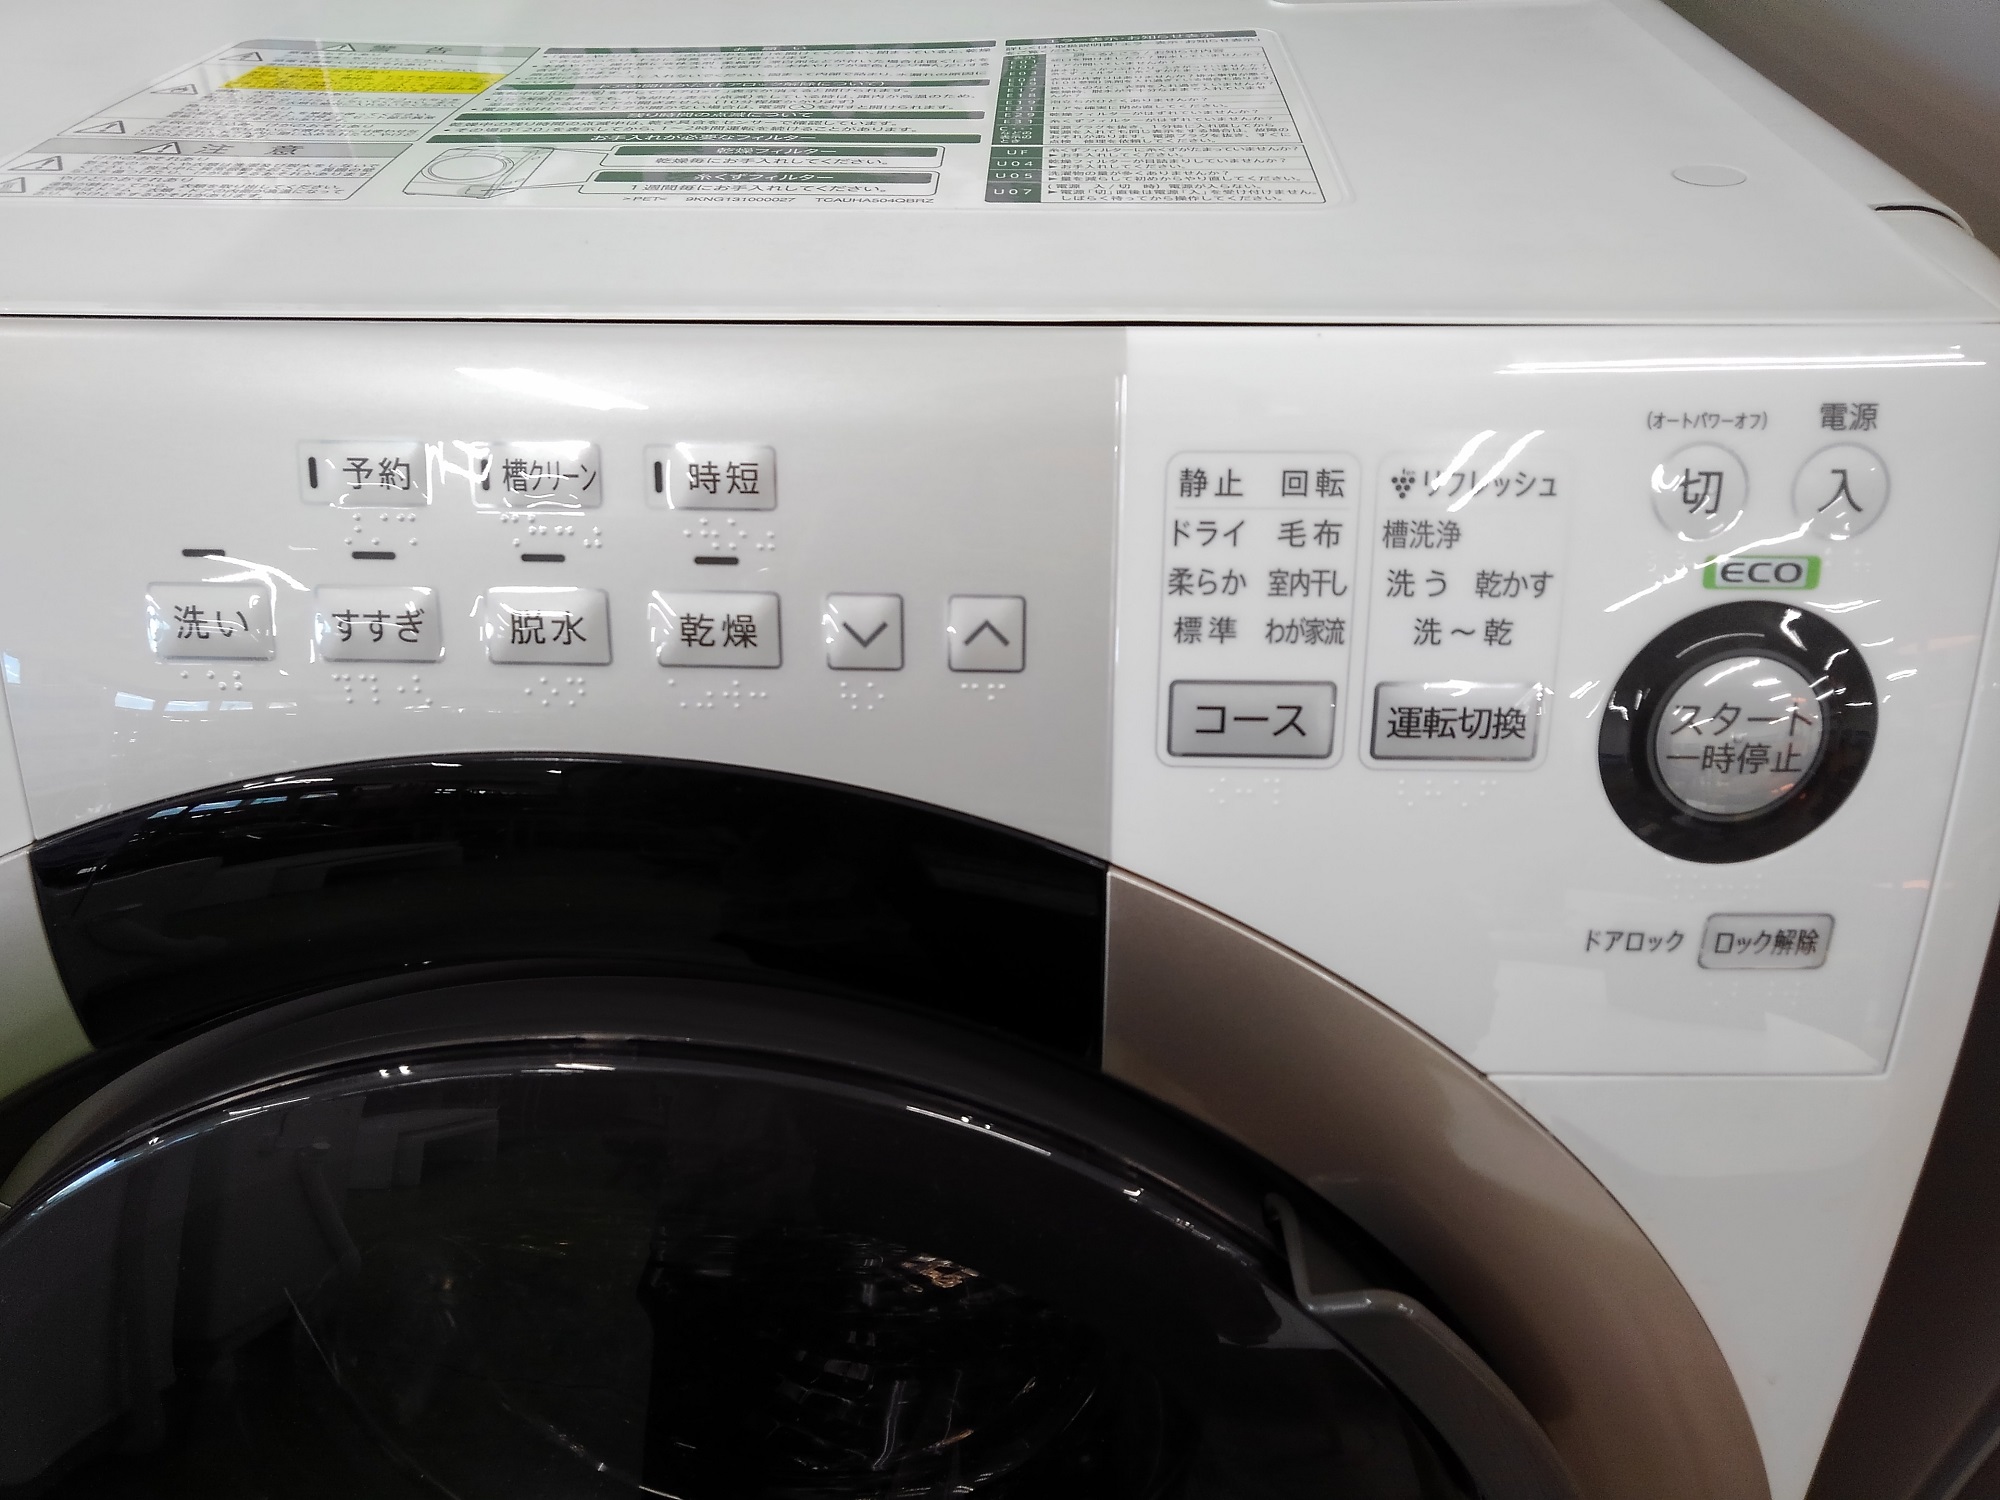 SHARP】2015年製ドラム式洗濯機、ES-S70-WL入荷しました♪【練馬店 